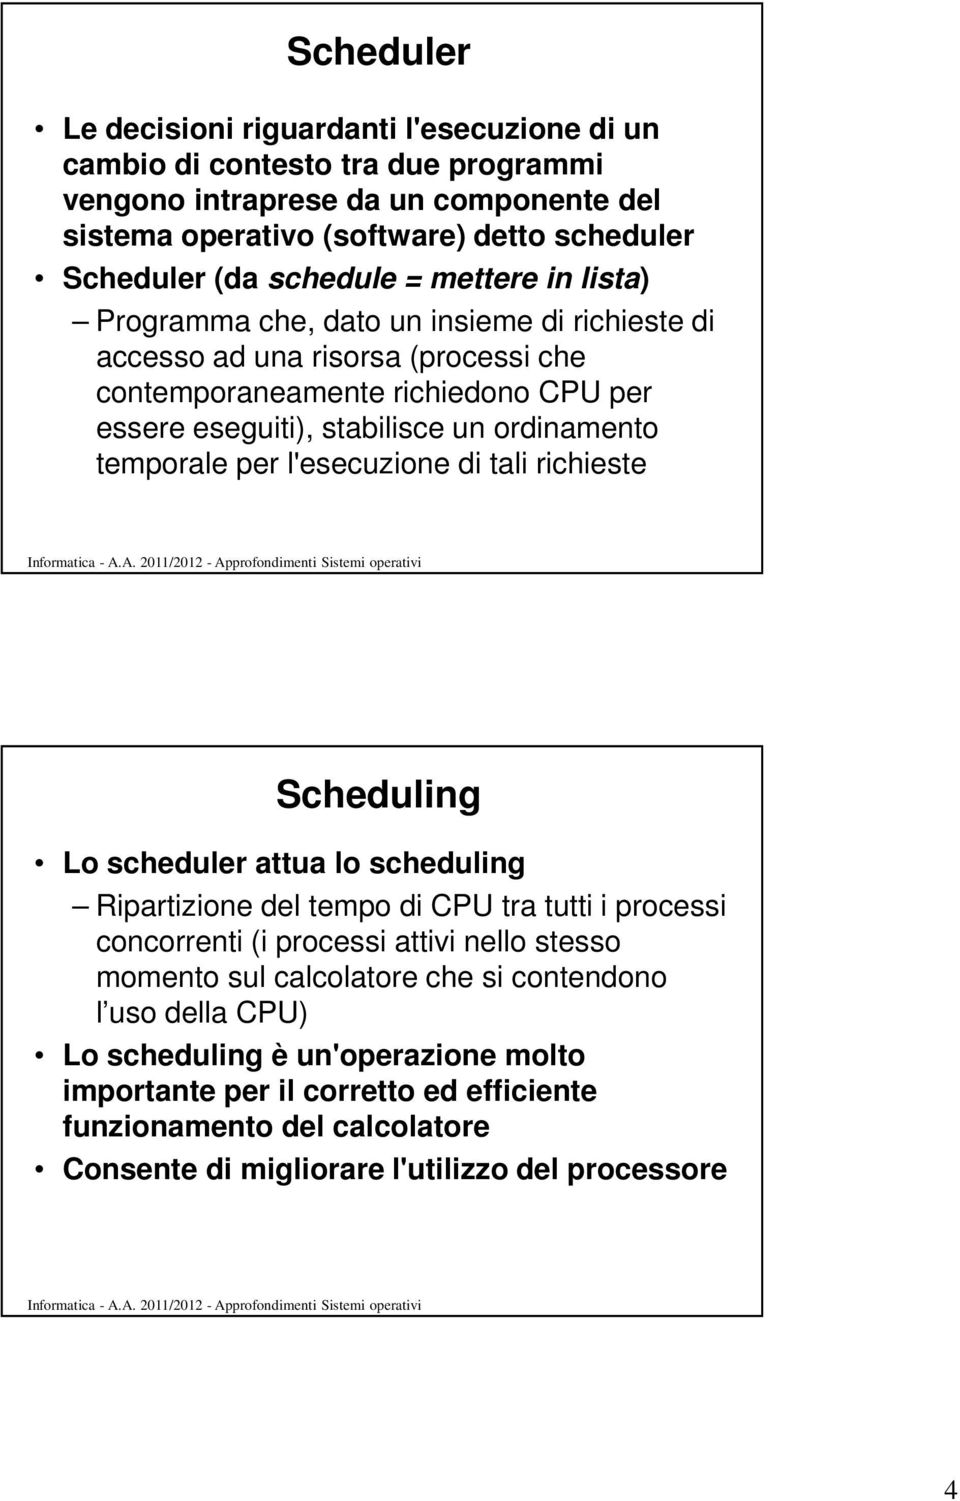 temporale per l'esecuzione di tali richieste Scheduling Lo scheduler attua lo scheduling Ripartizione del tempo di CPU tra tutti i processi concorrenti (i processi attivi nello stesso momento sul